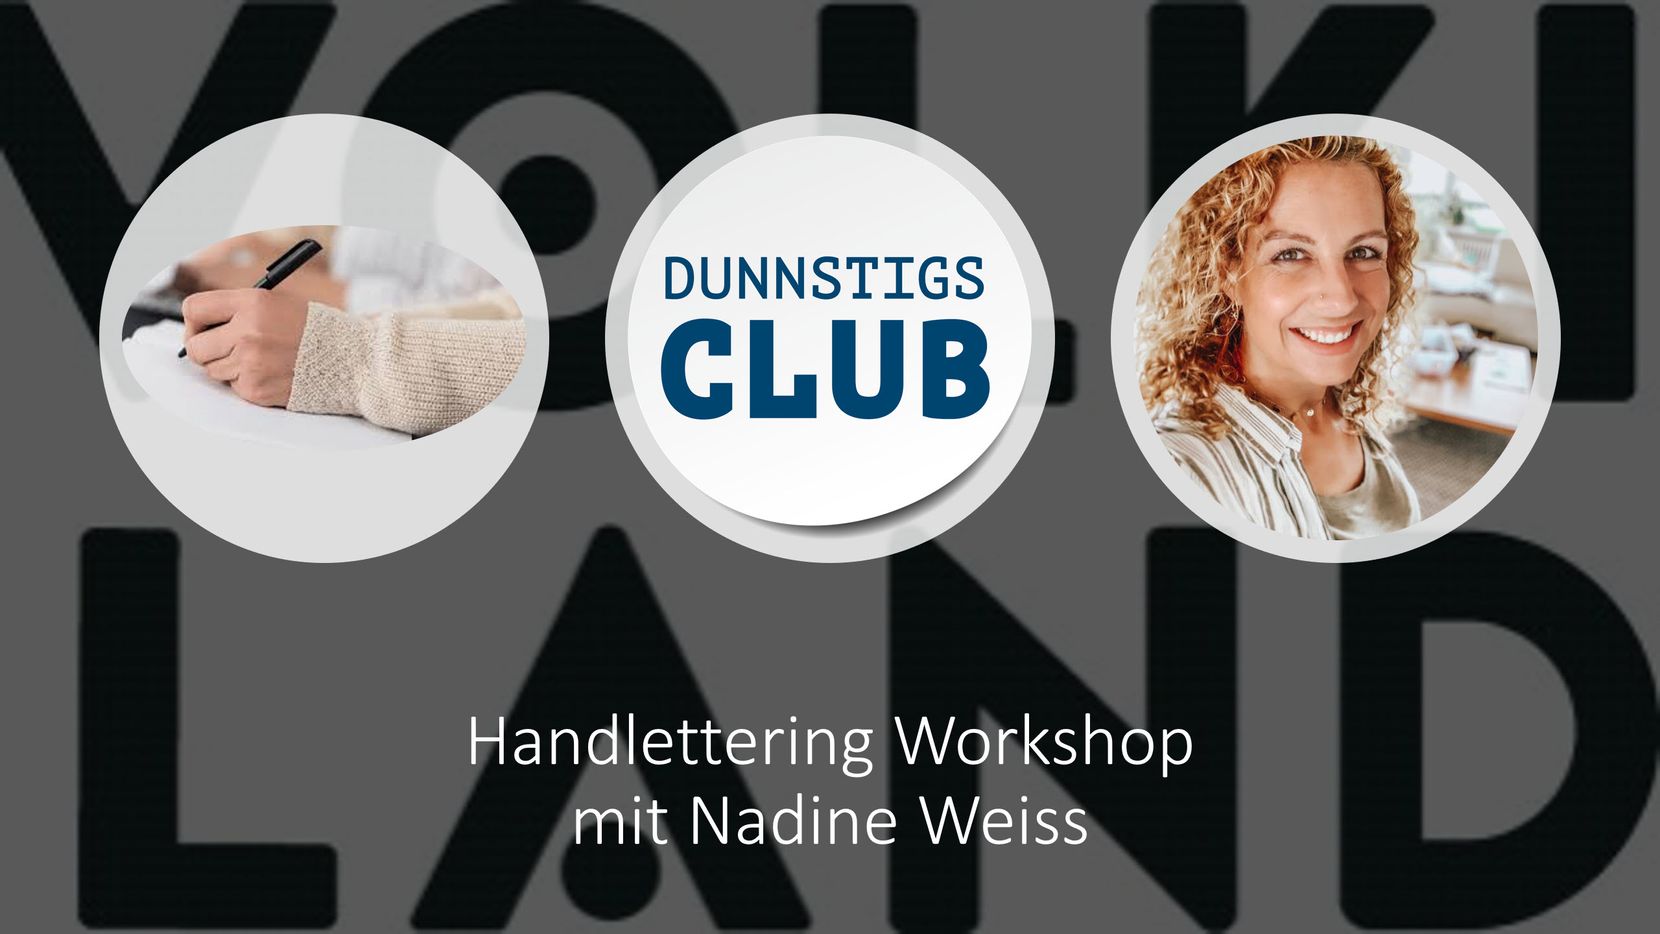 Der Handlettering-Workshop im Dunnstigs Club im Volkiland.